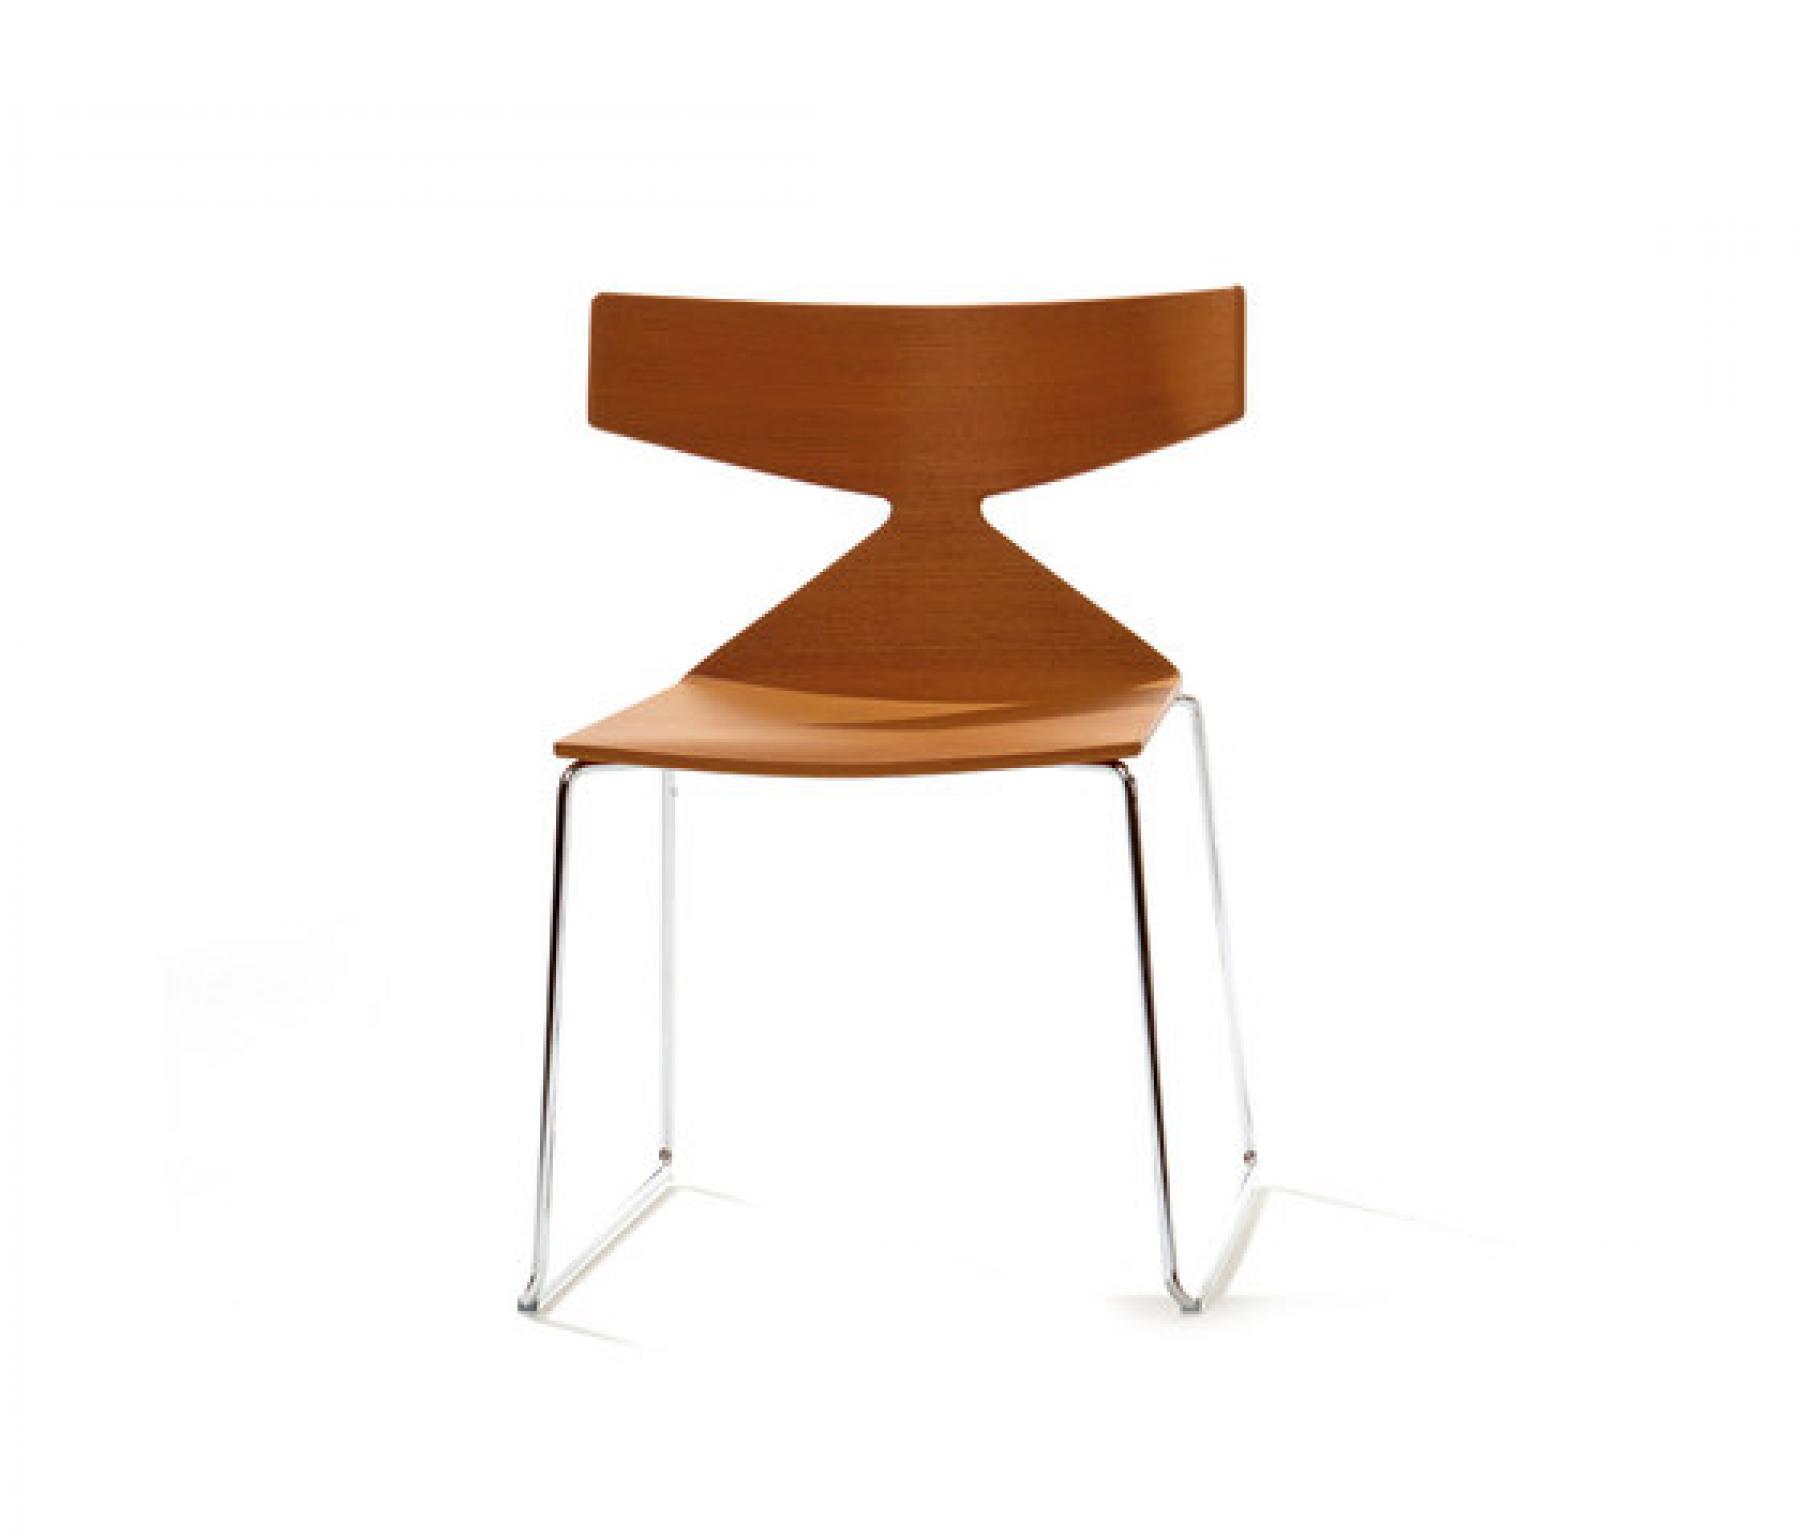 multifuncitonele stoel arper saya design item SKEPP 